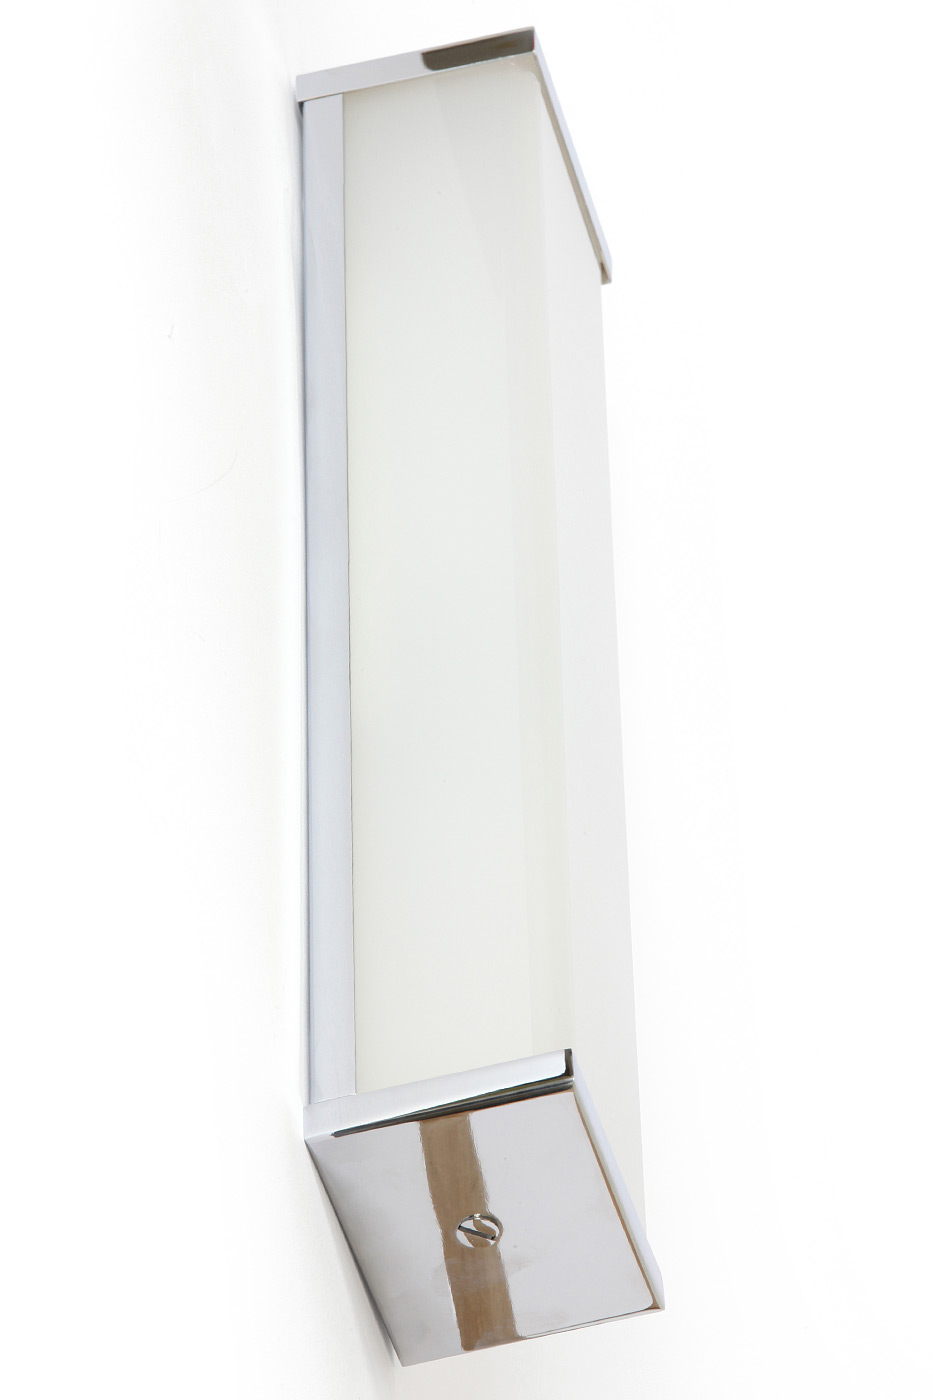 Hohe Chrom-Wandleuchte z.B. für Bad-Spiegel, LED: Eine puristische, hohe Wandleuchte für das Bad